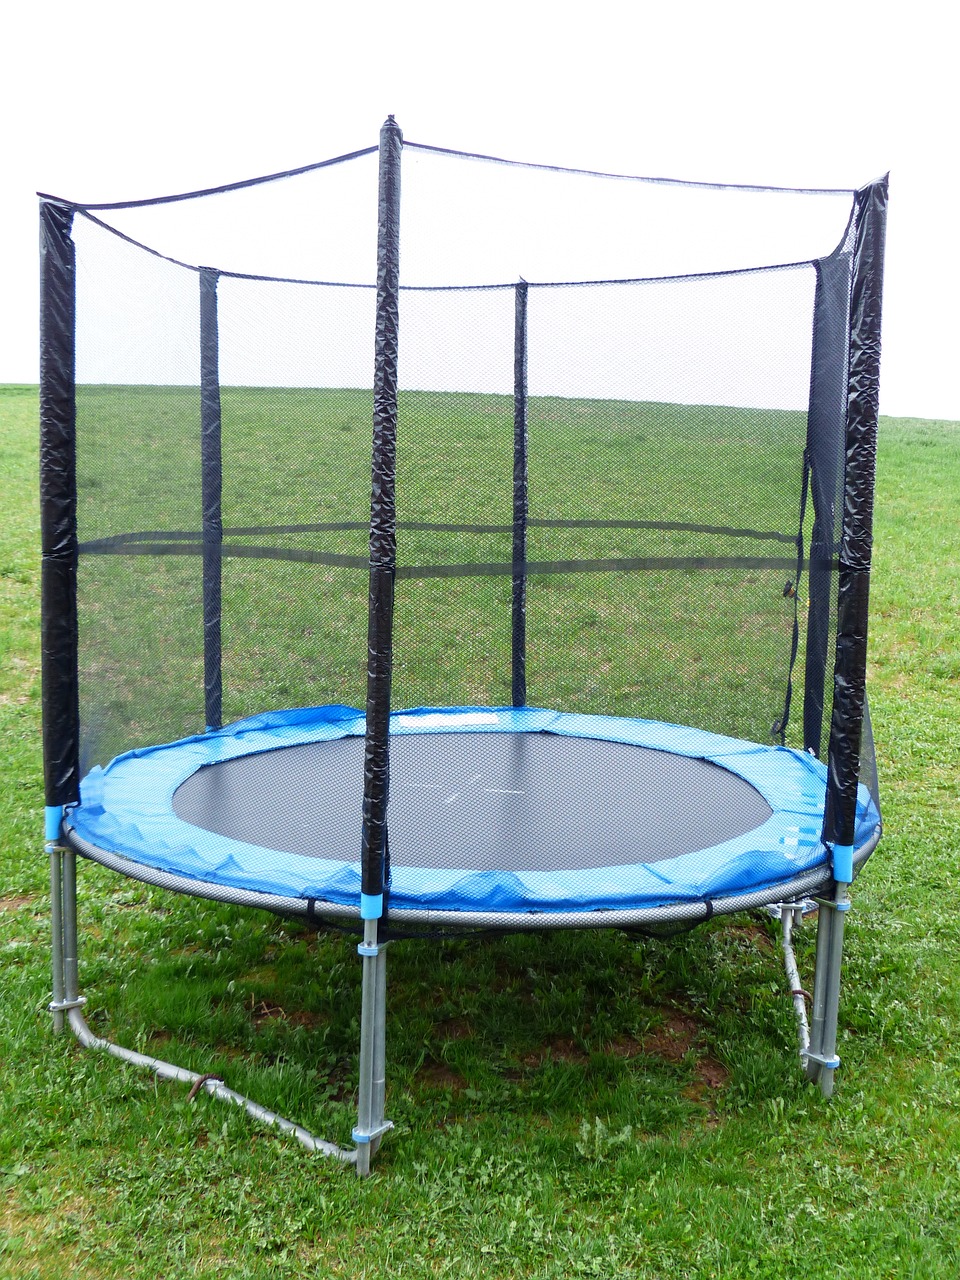 Comment choisir le trampoline d’extérieur parfait pour vous ?